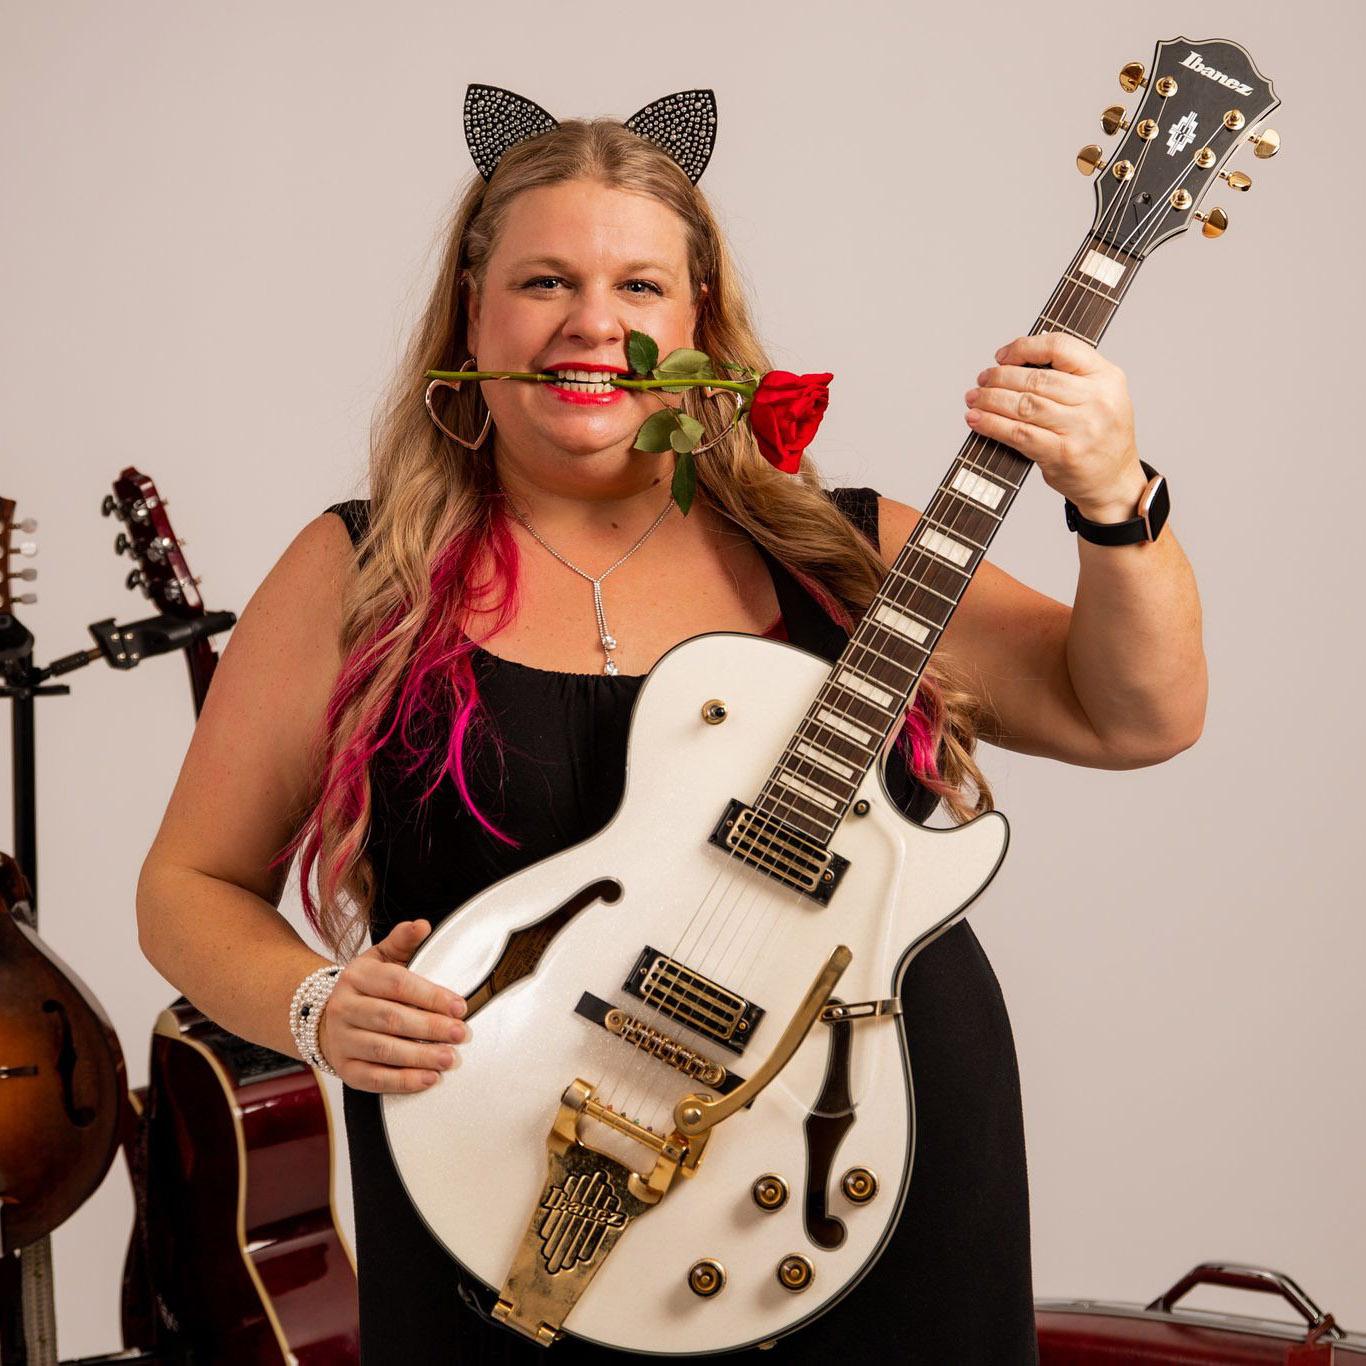 Arkansas' hardest working musician, Patti Steel